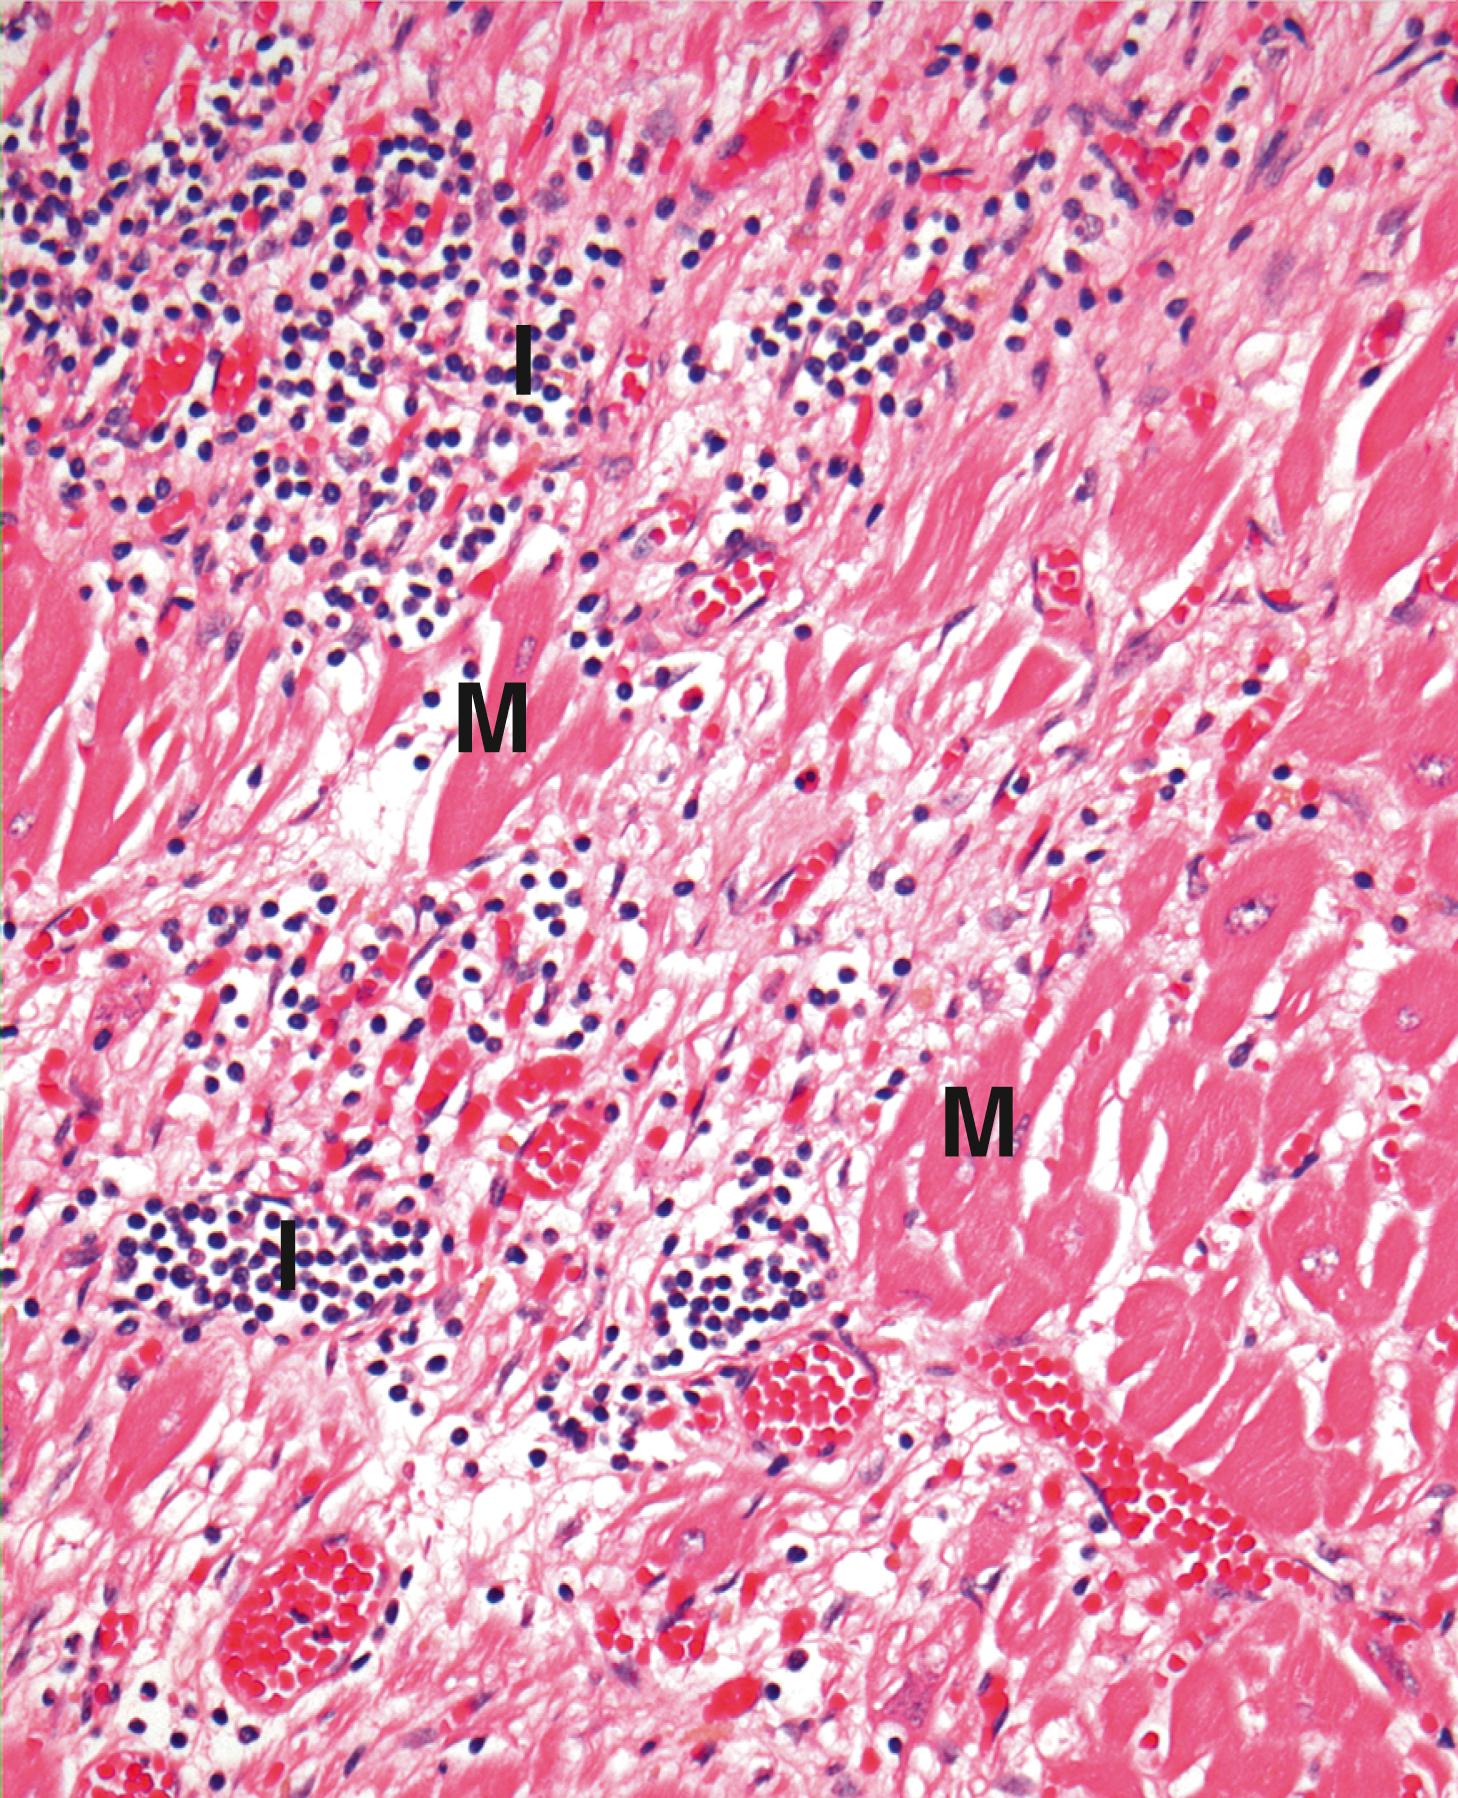 Fig. 11.14, Viral myocarditis (HP).